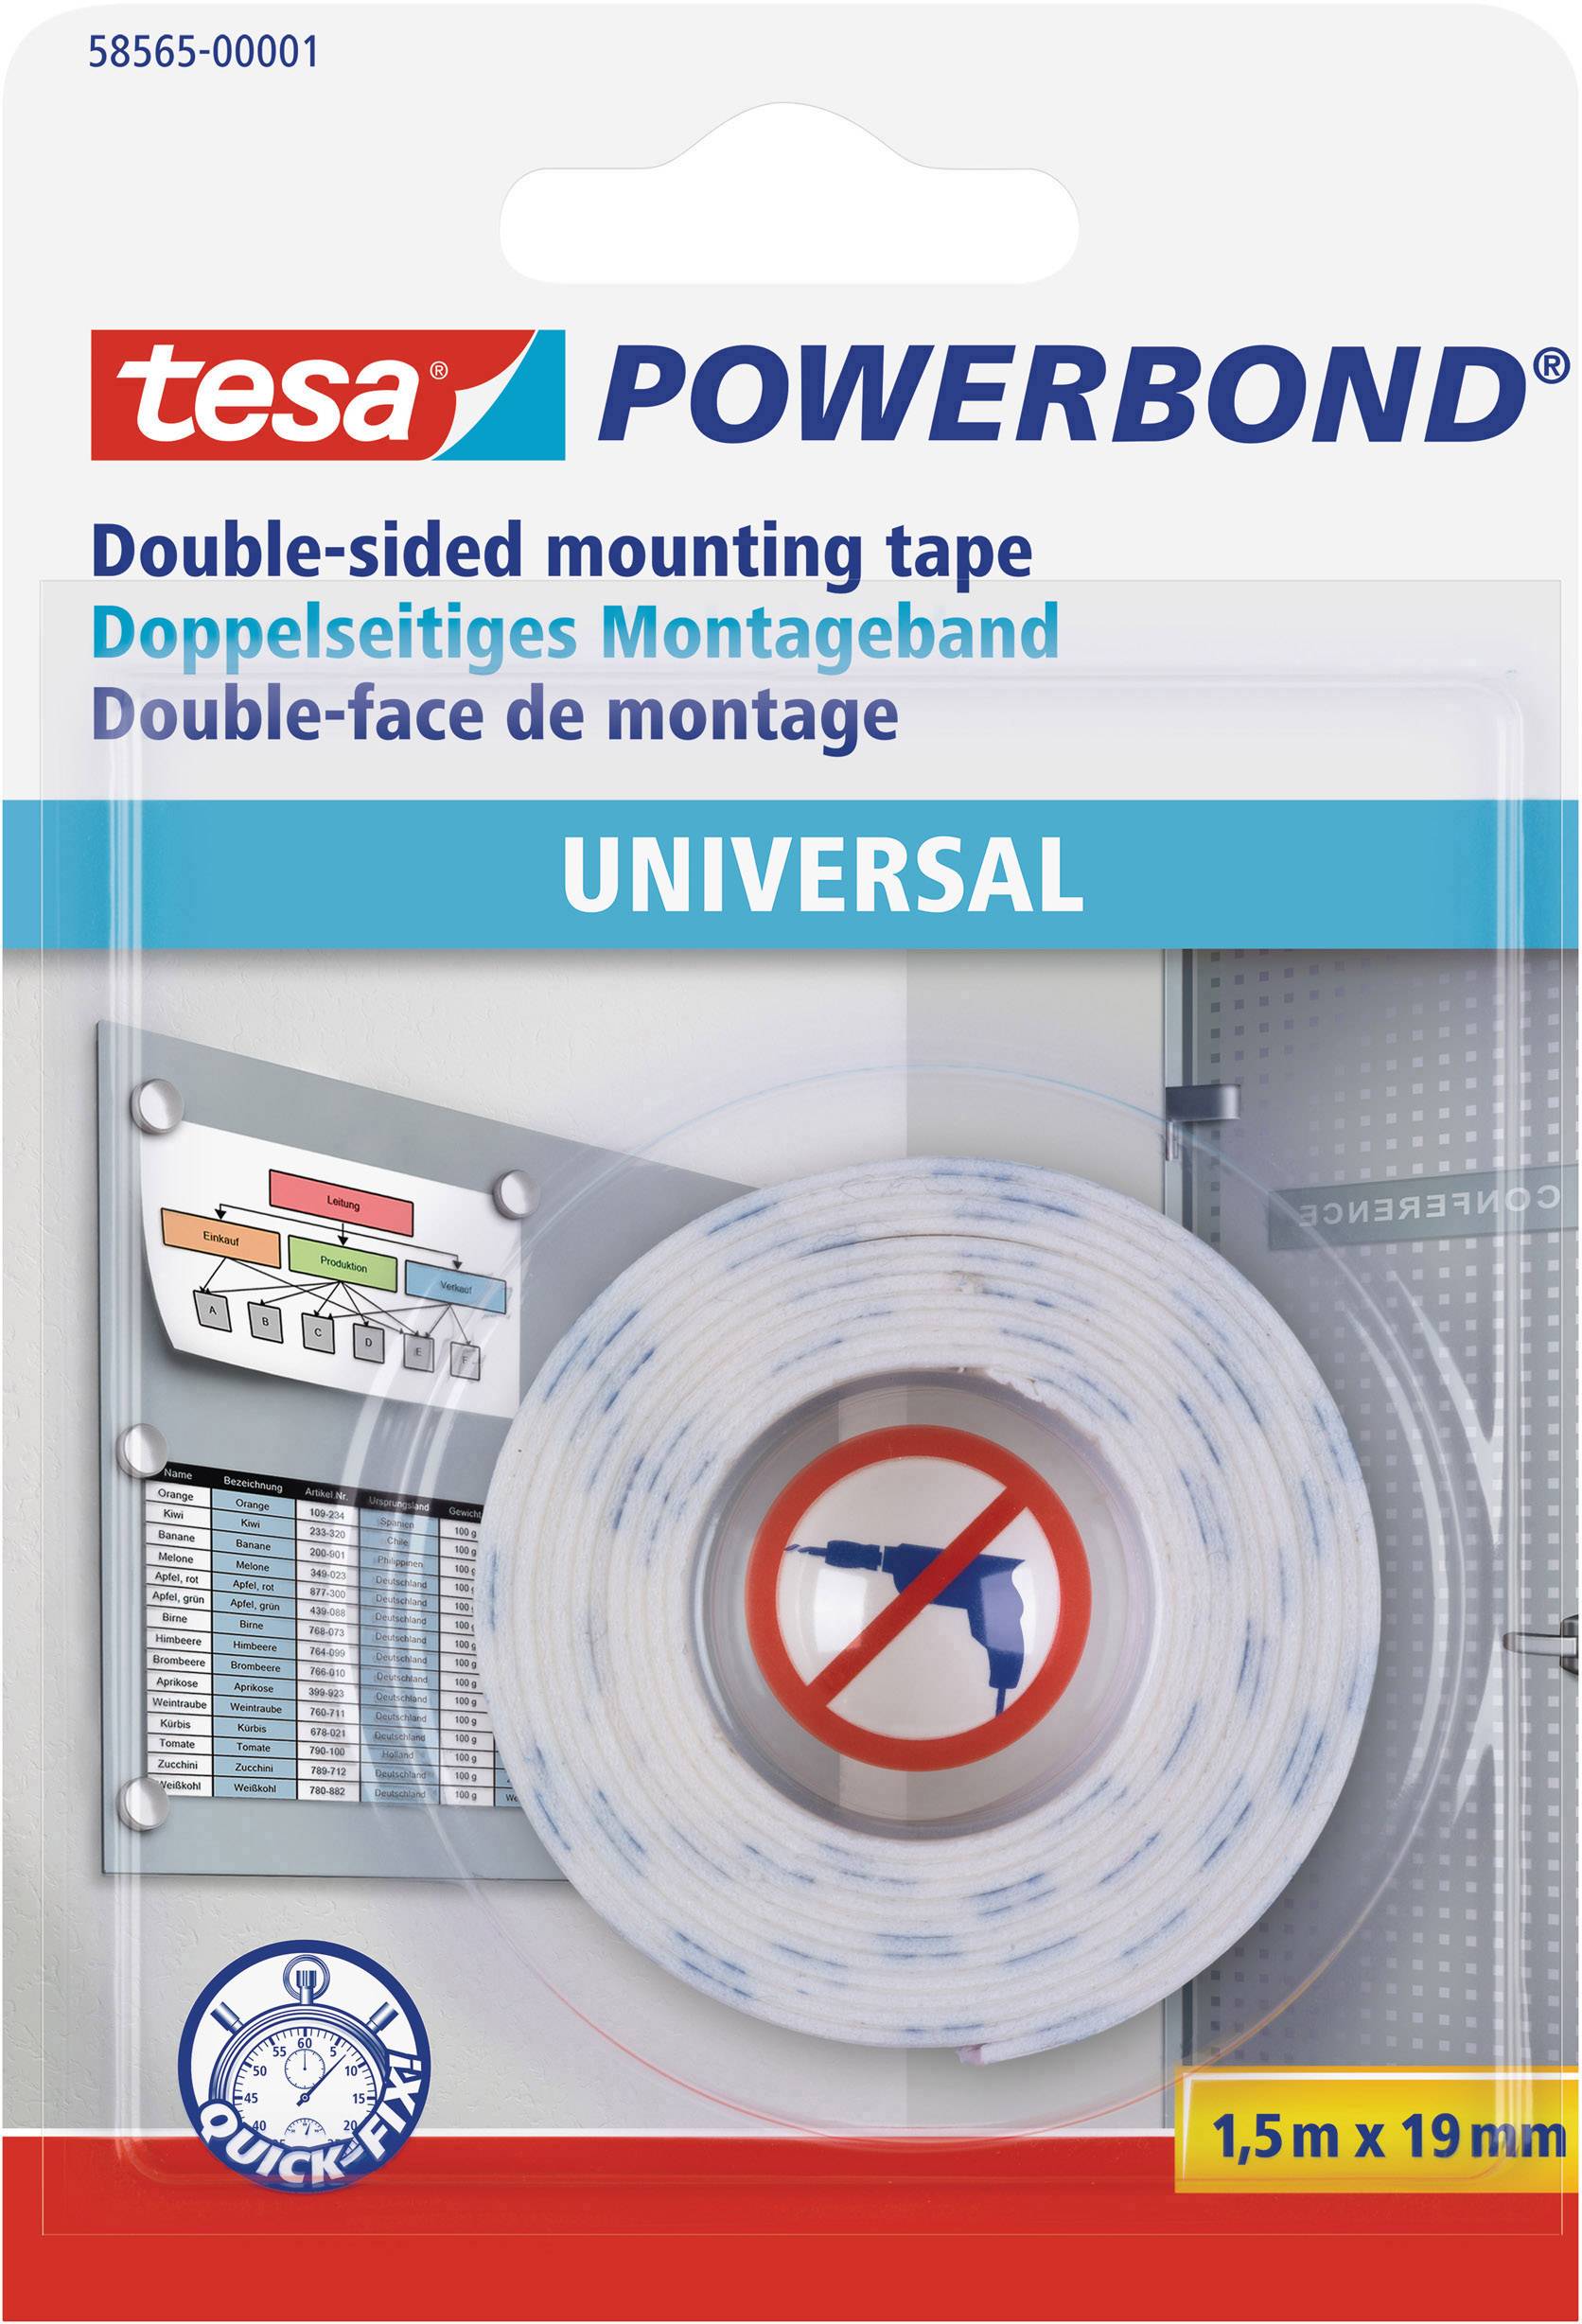 TESA UNIVERSAL 58565-00001-00 Montageband tesa® Powerbond Weiß (L x B) 1.5 m x 19 mm 1 St.